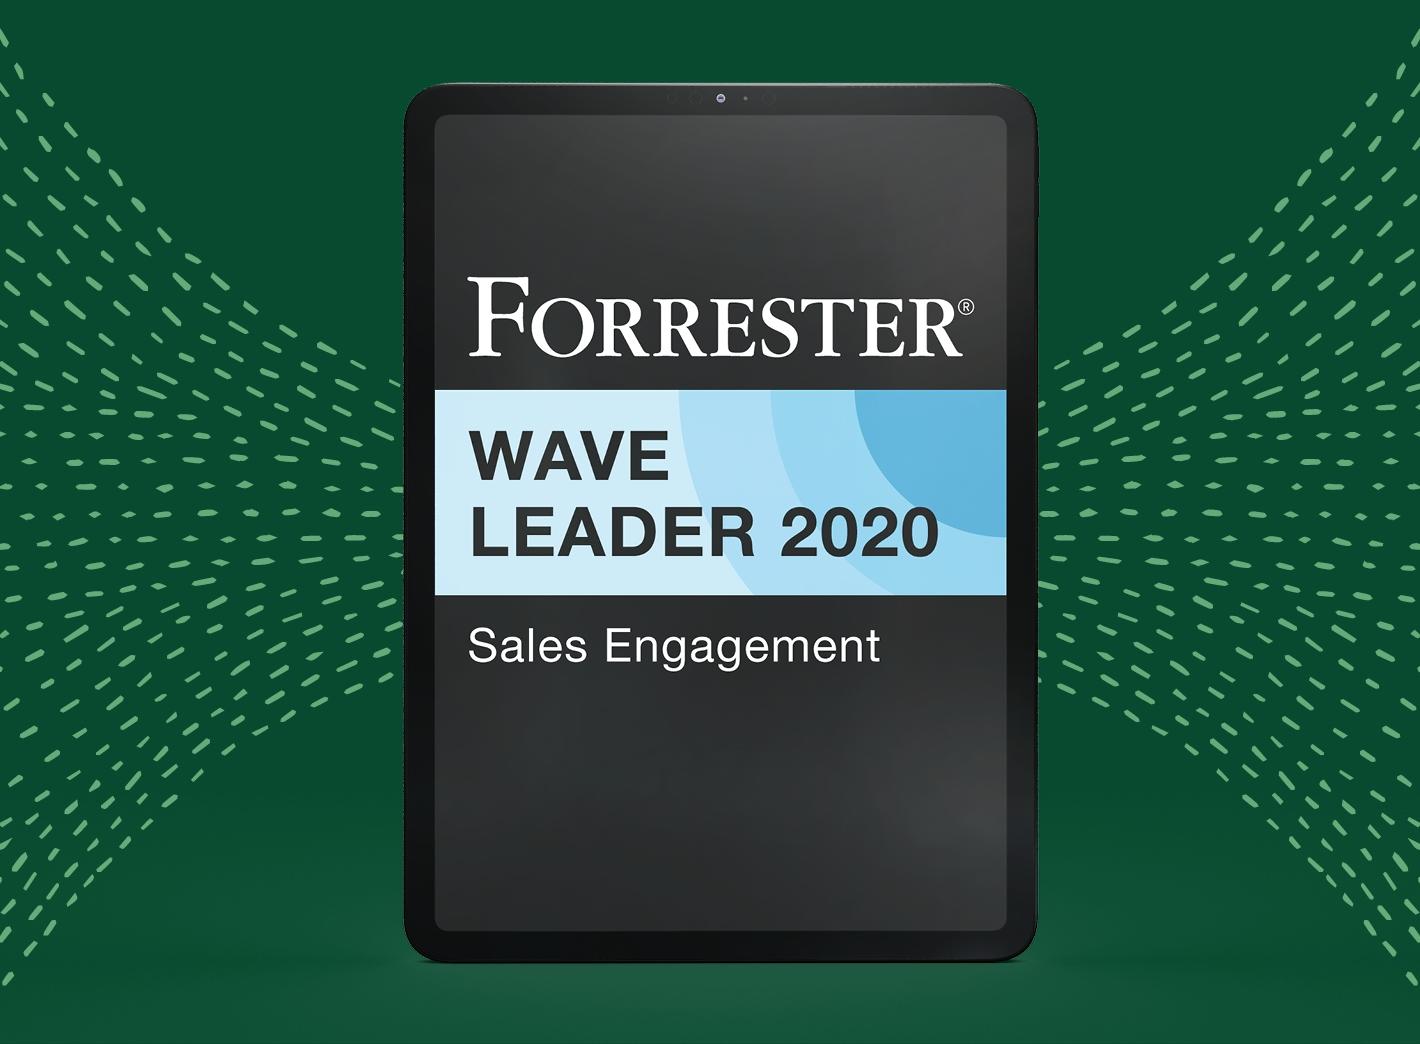 "Forrester wave leader 2020"